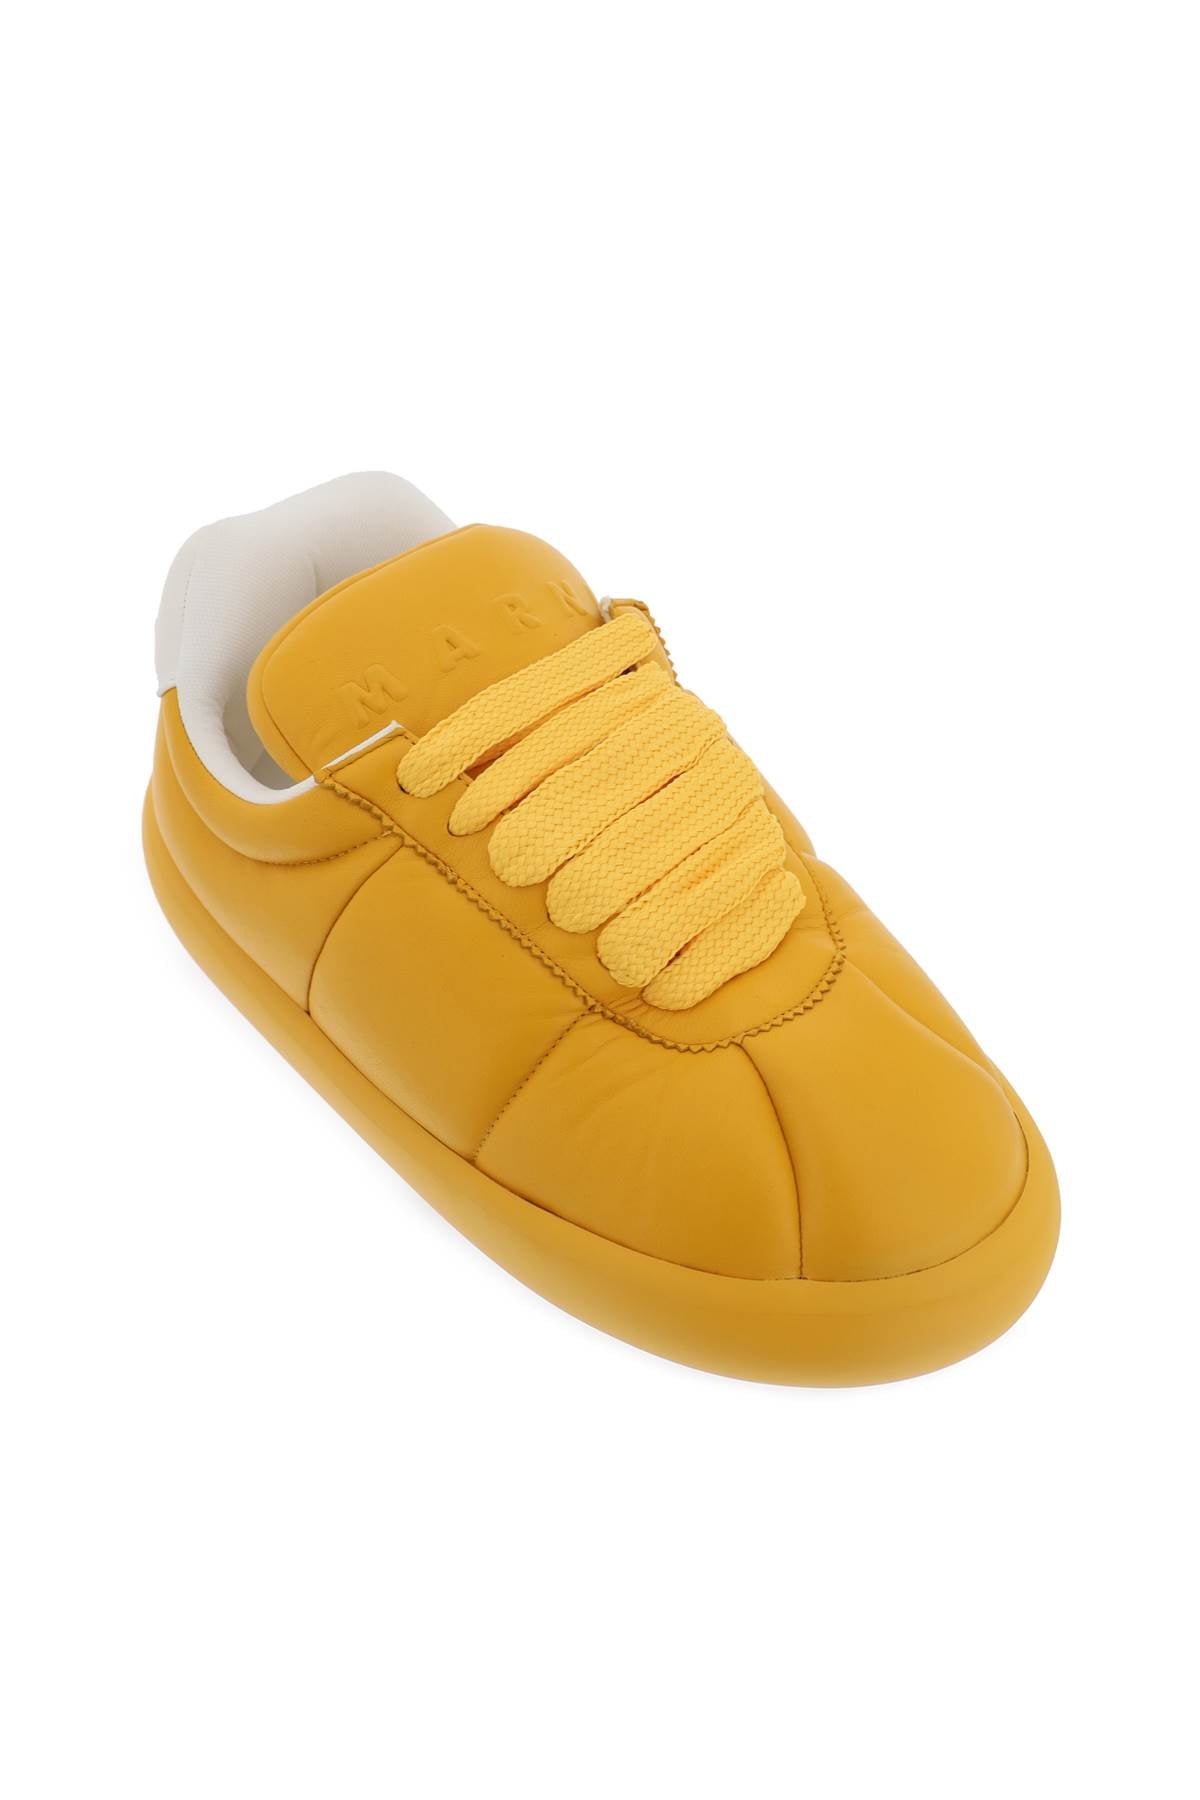 Shop Marni Leather Bigfoot 2.0 Sneakers In Yellow, Orange